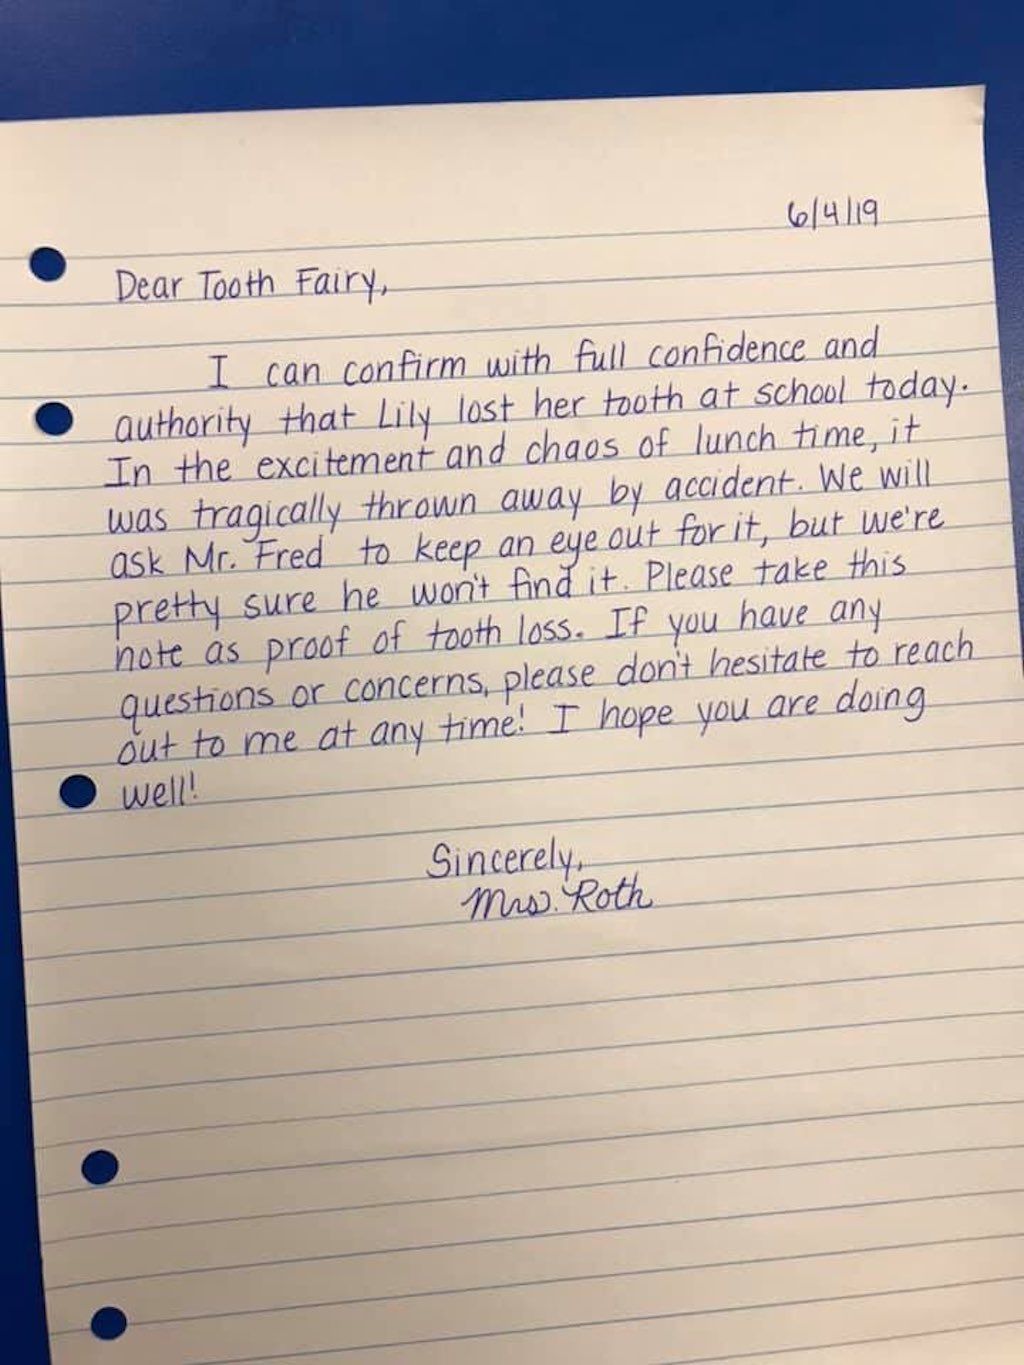 To učiteljevo pismo zobni vili v imenu prvošolca vas bo nasmejalo